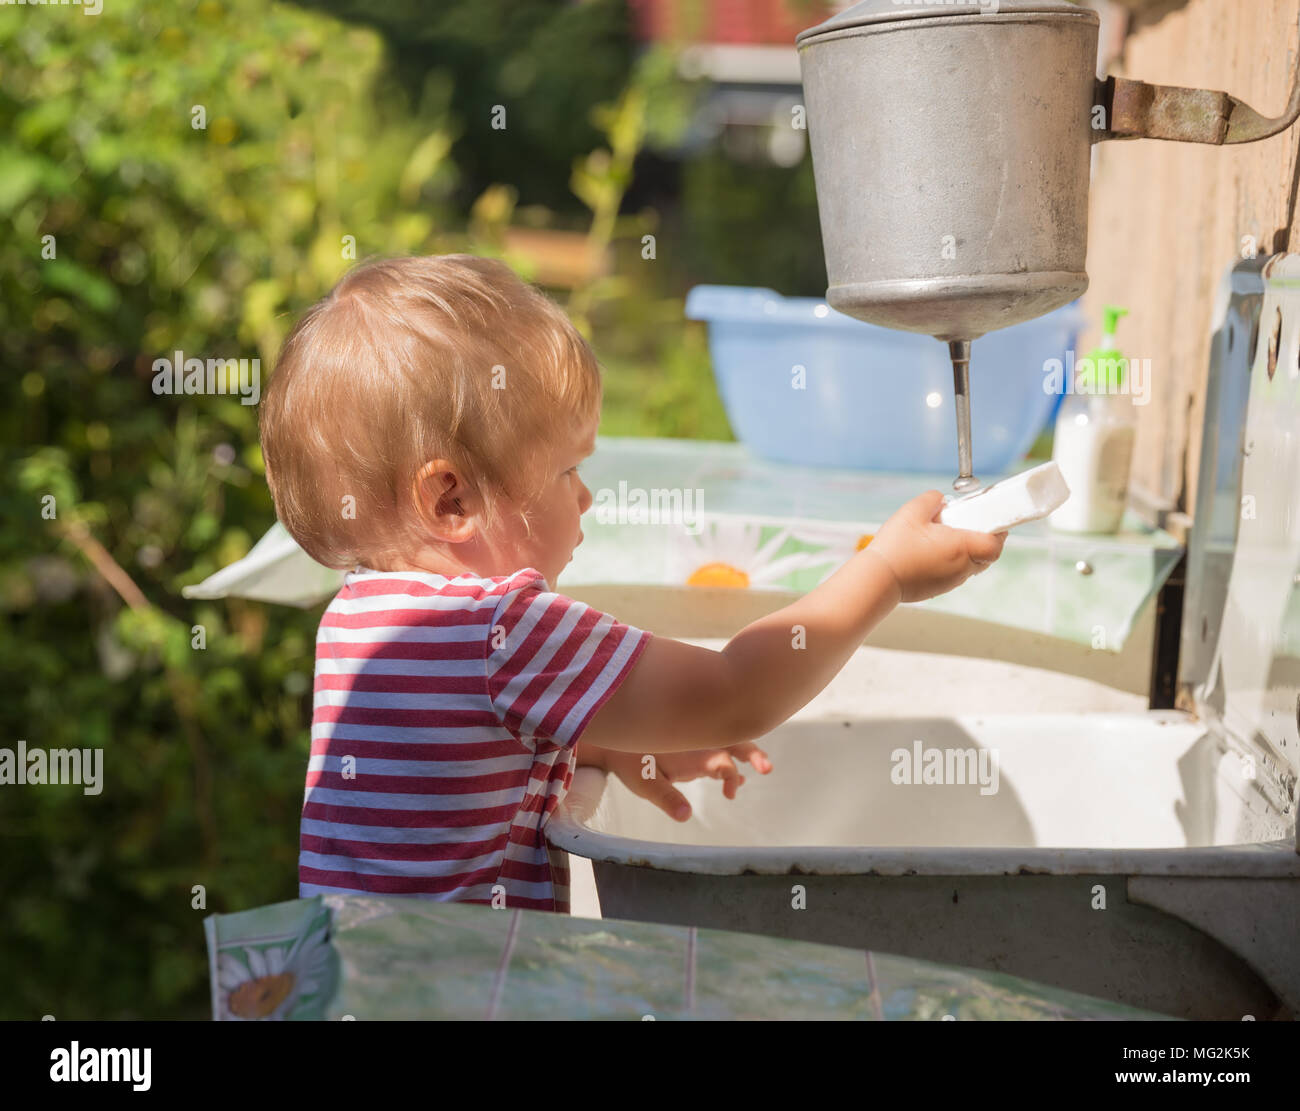 Un niño pequeño, pequeño, de 2 años, rubio, de camiseta de rayas se lava las manos bajo lavabo afuera en el campo Foto de stock